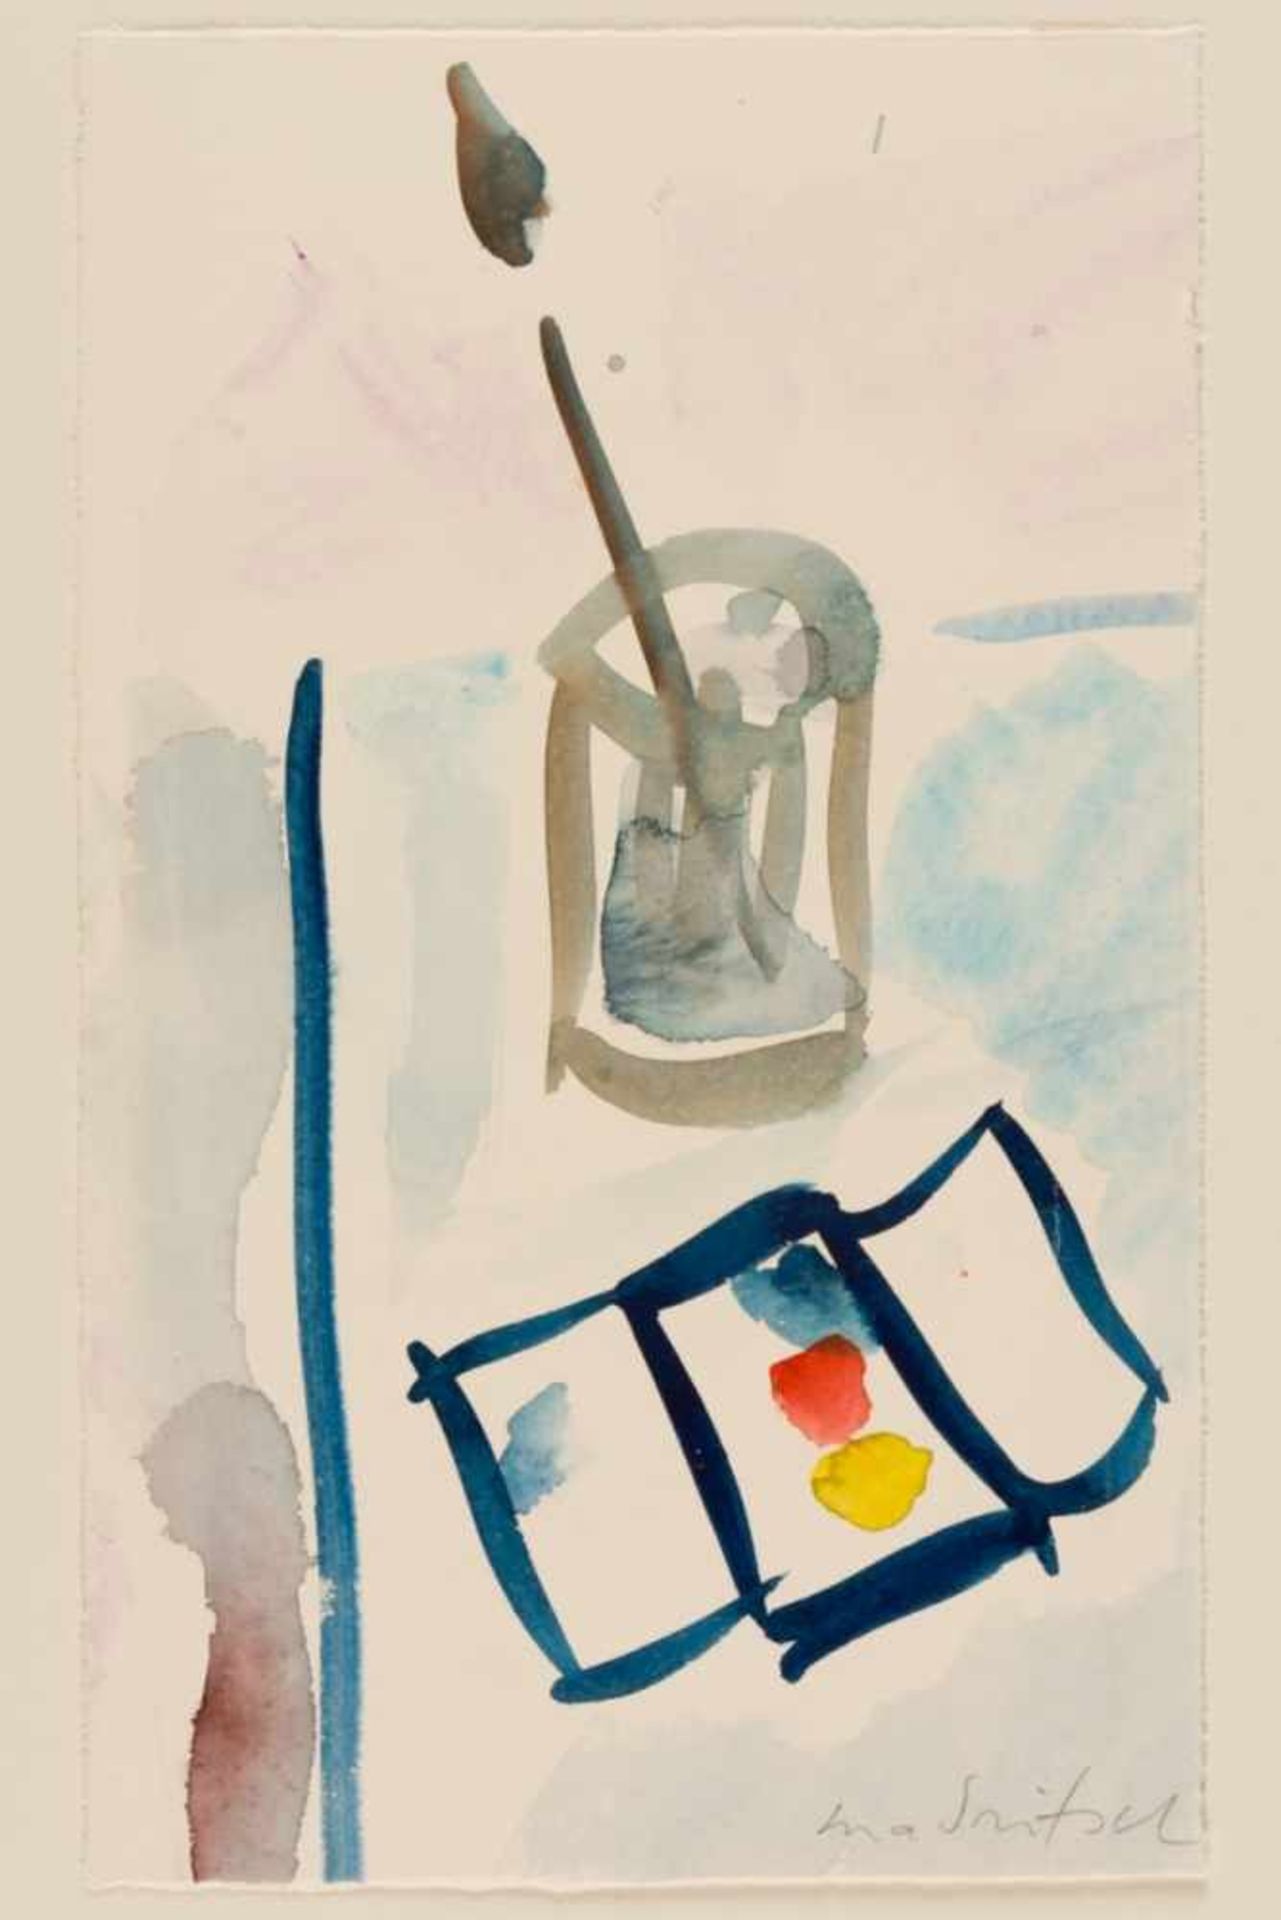 Karl MADRITSCH (1908-1986)StilllebenAquarell auf Papier, mit Bleistift signiert27,5 x 16,5 cmKarl